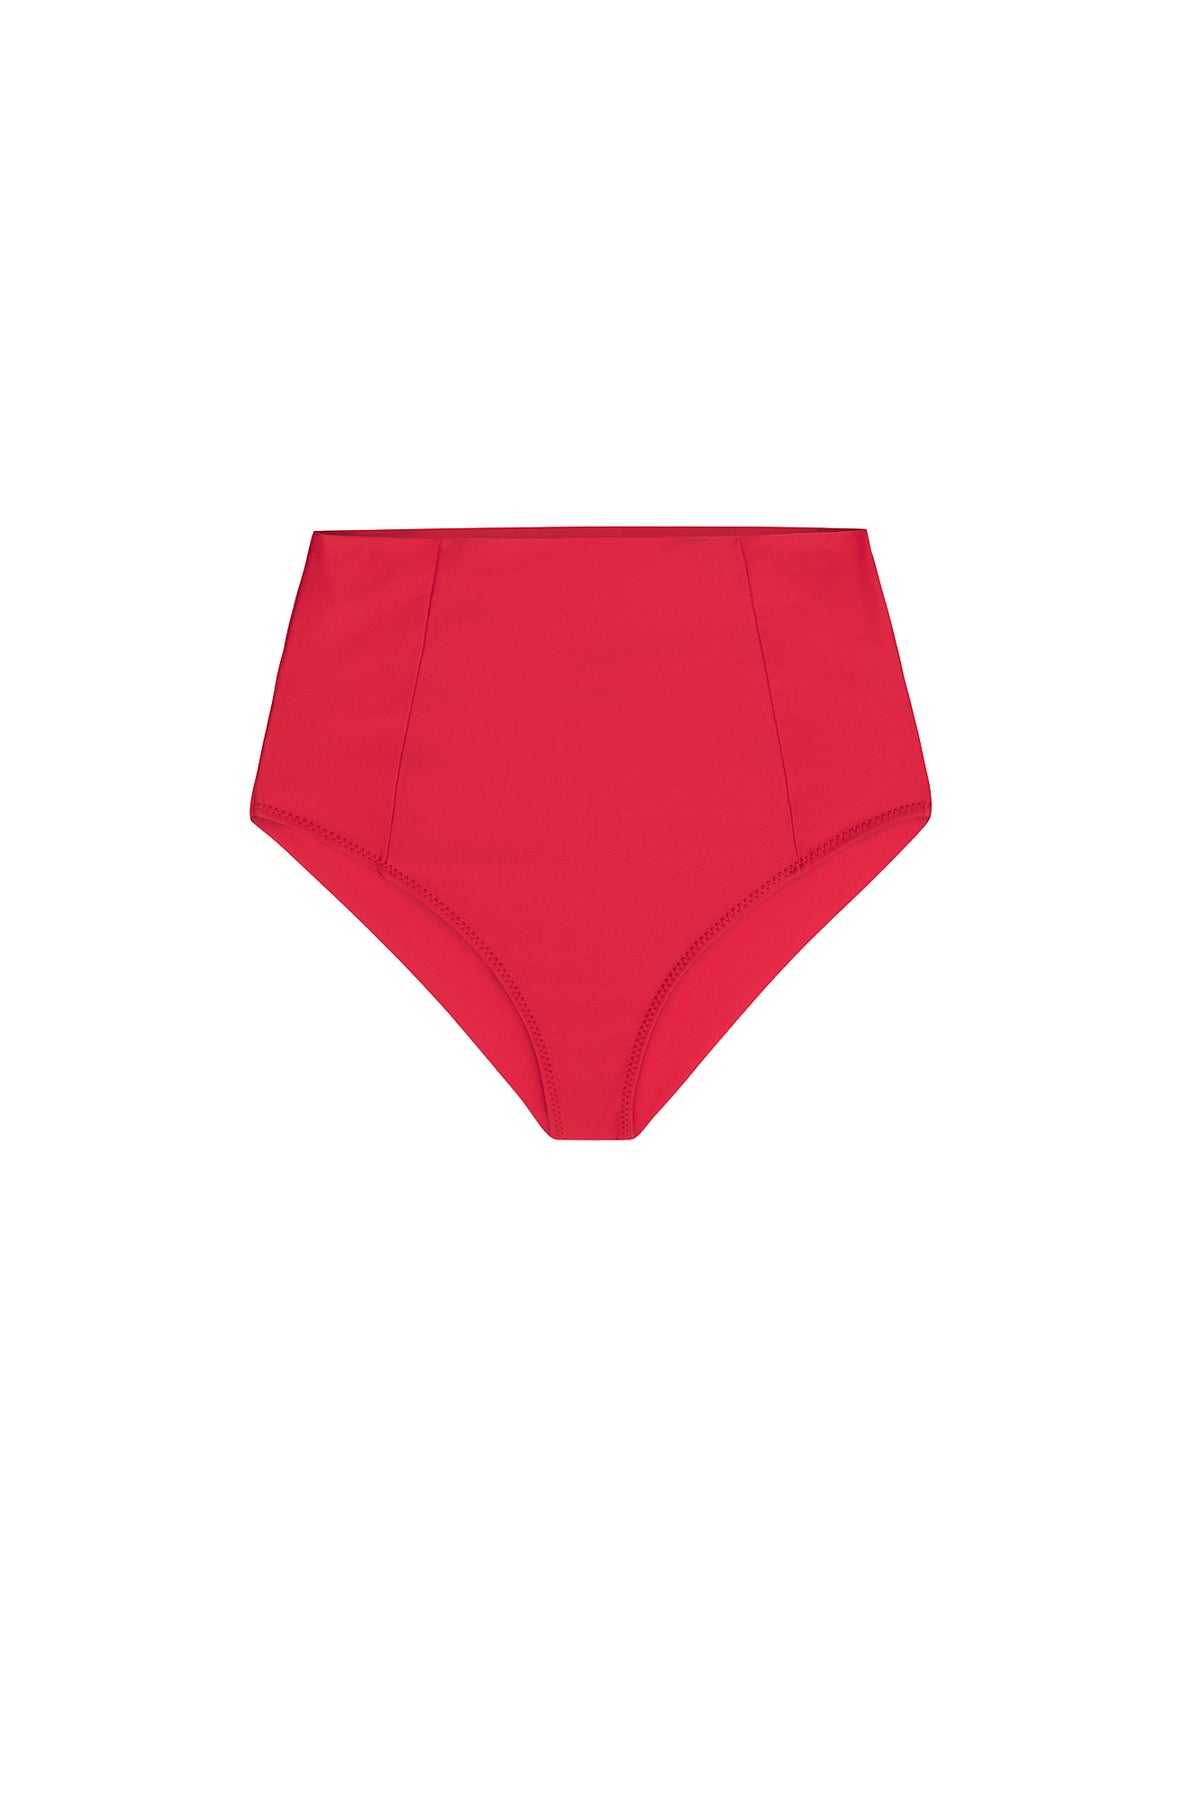 Carolina K Selena Bikini Bottom Red